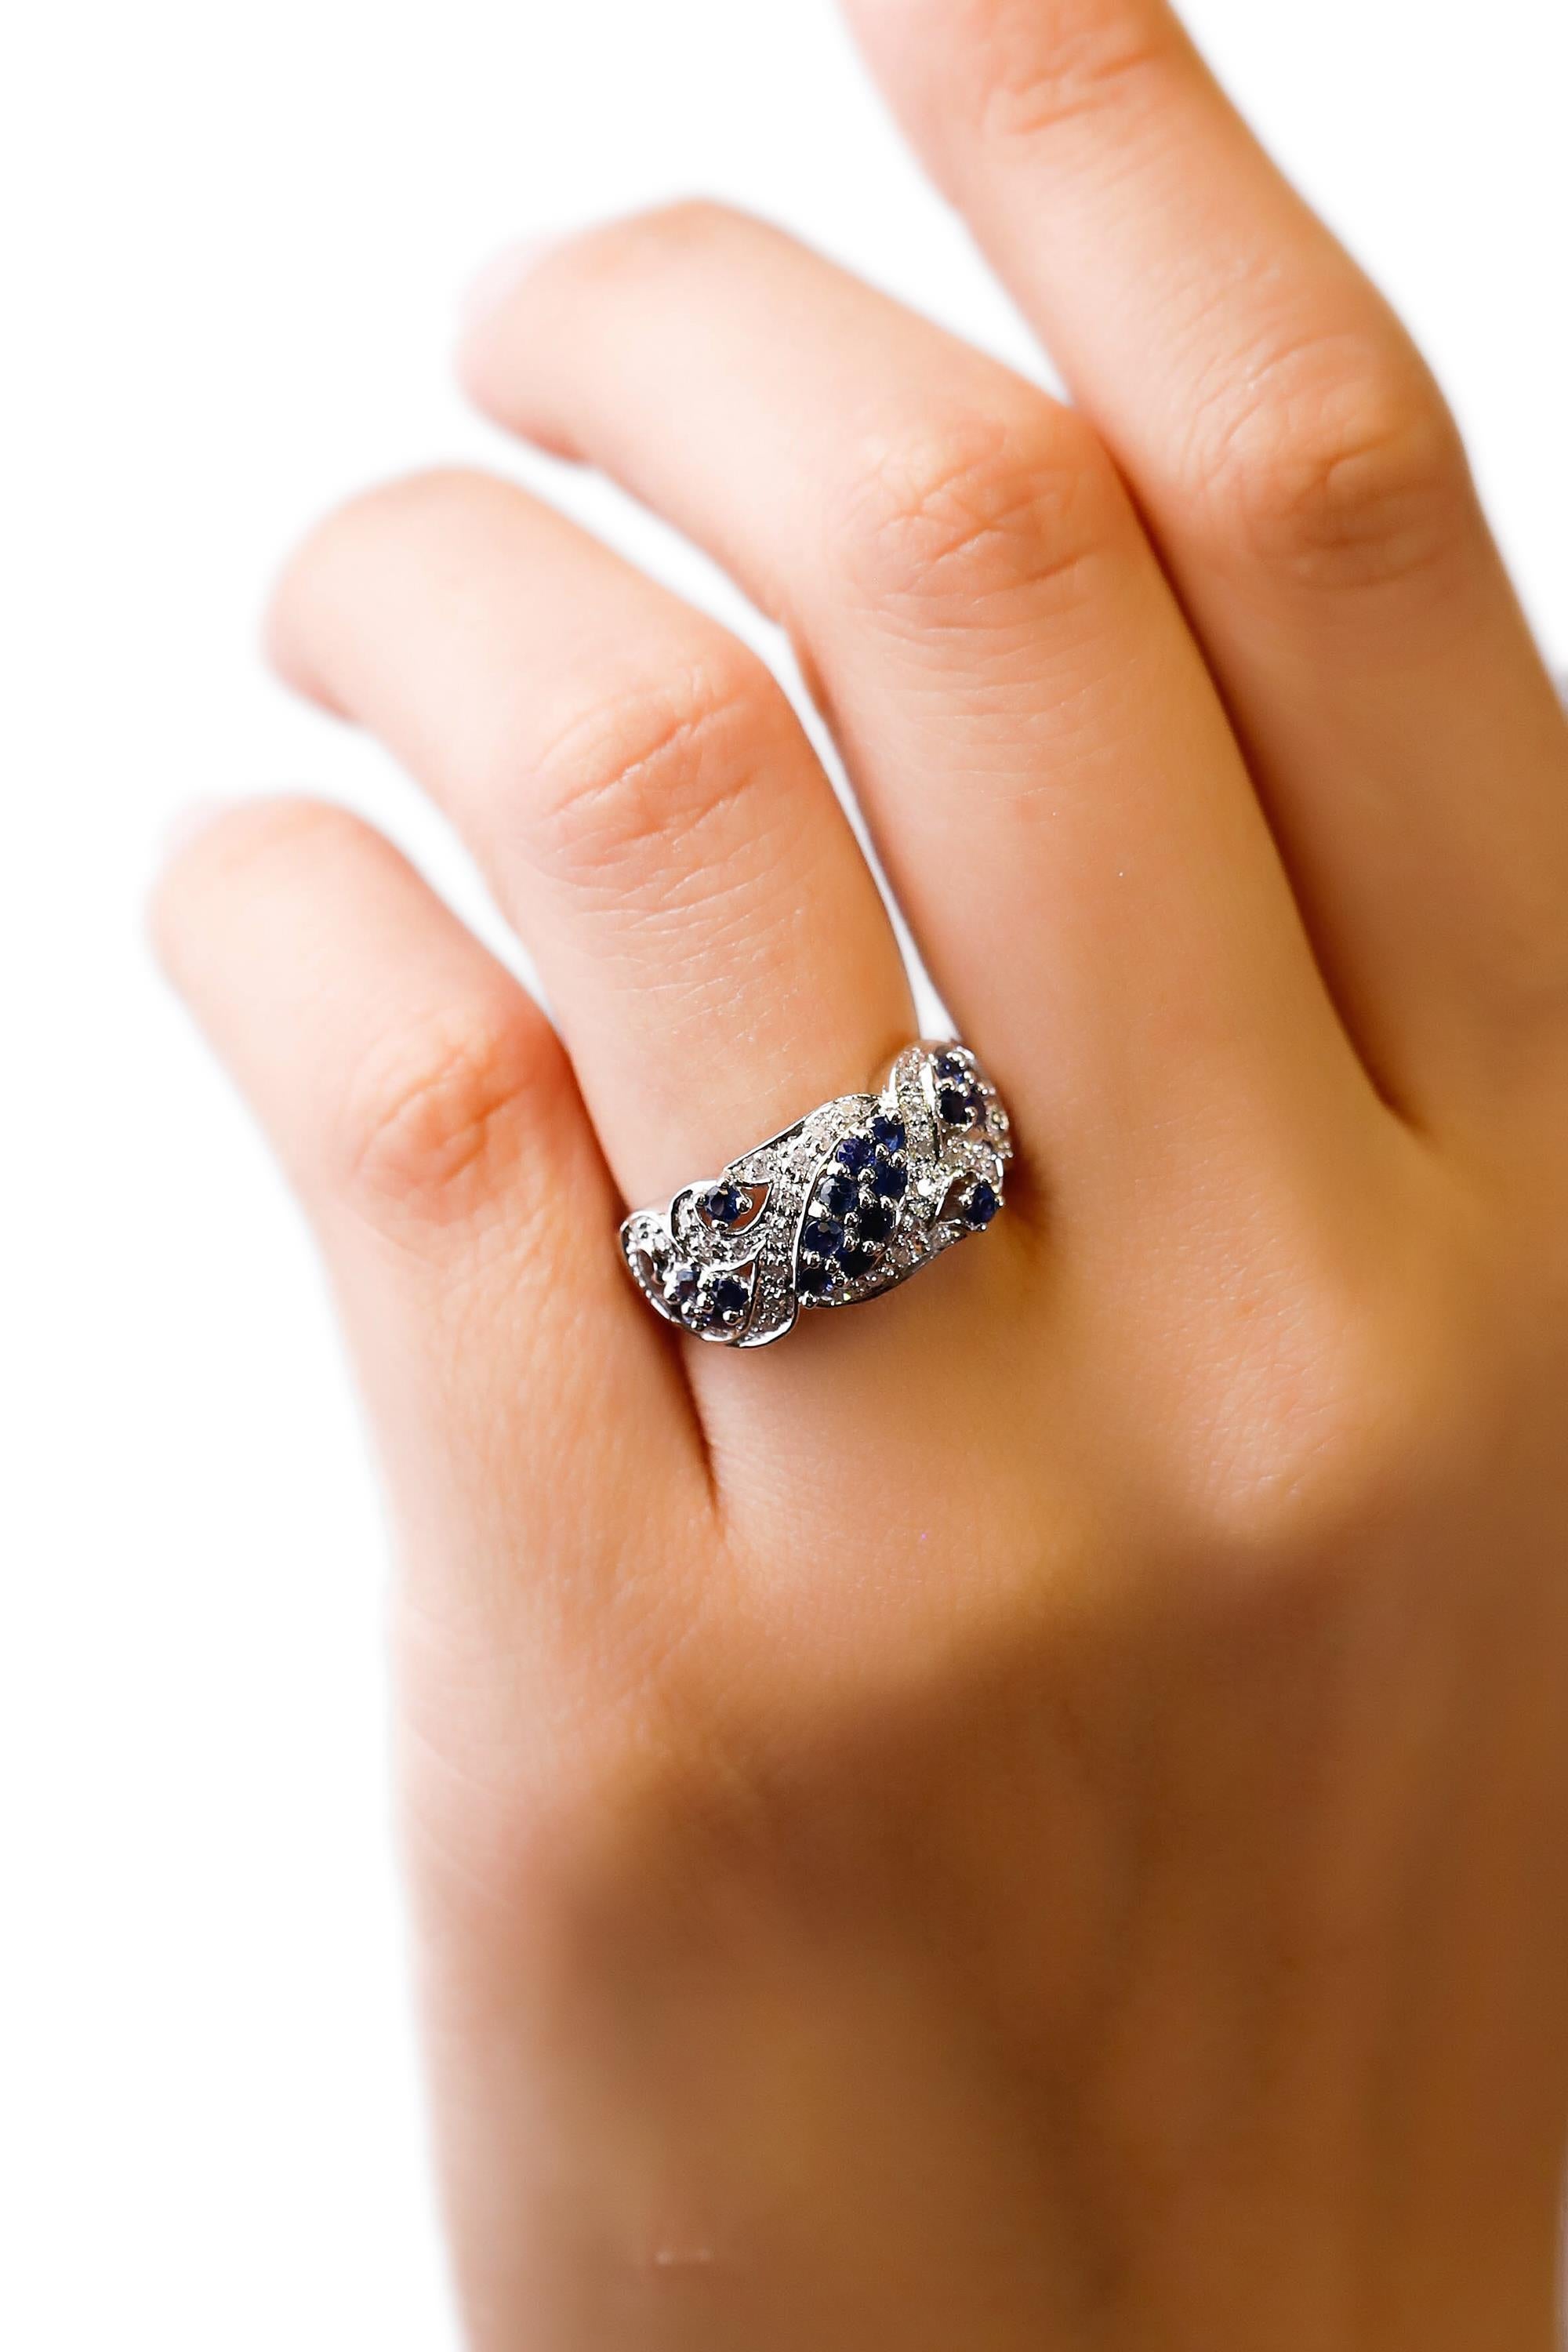 Artisan 14 Karat White Gold 0.73 Carat Blue Sapphire Round Diamond Wedding Band Ring